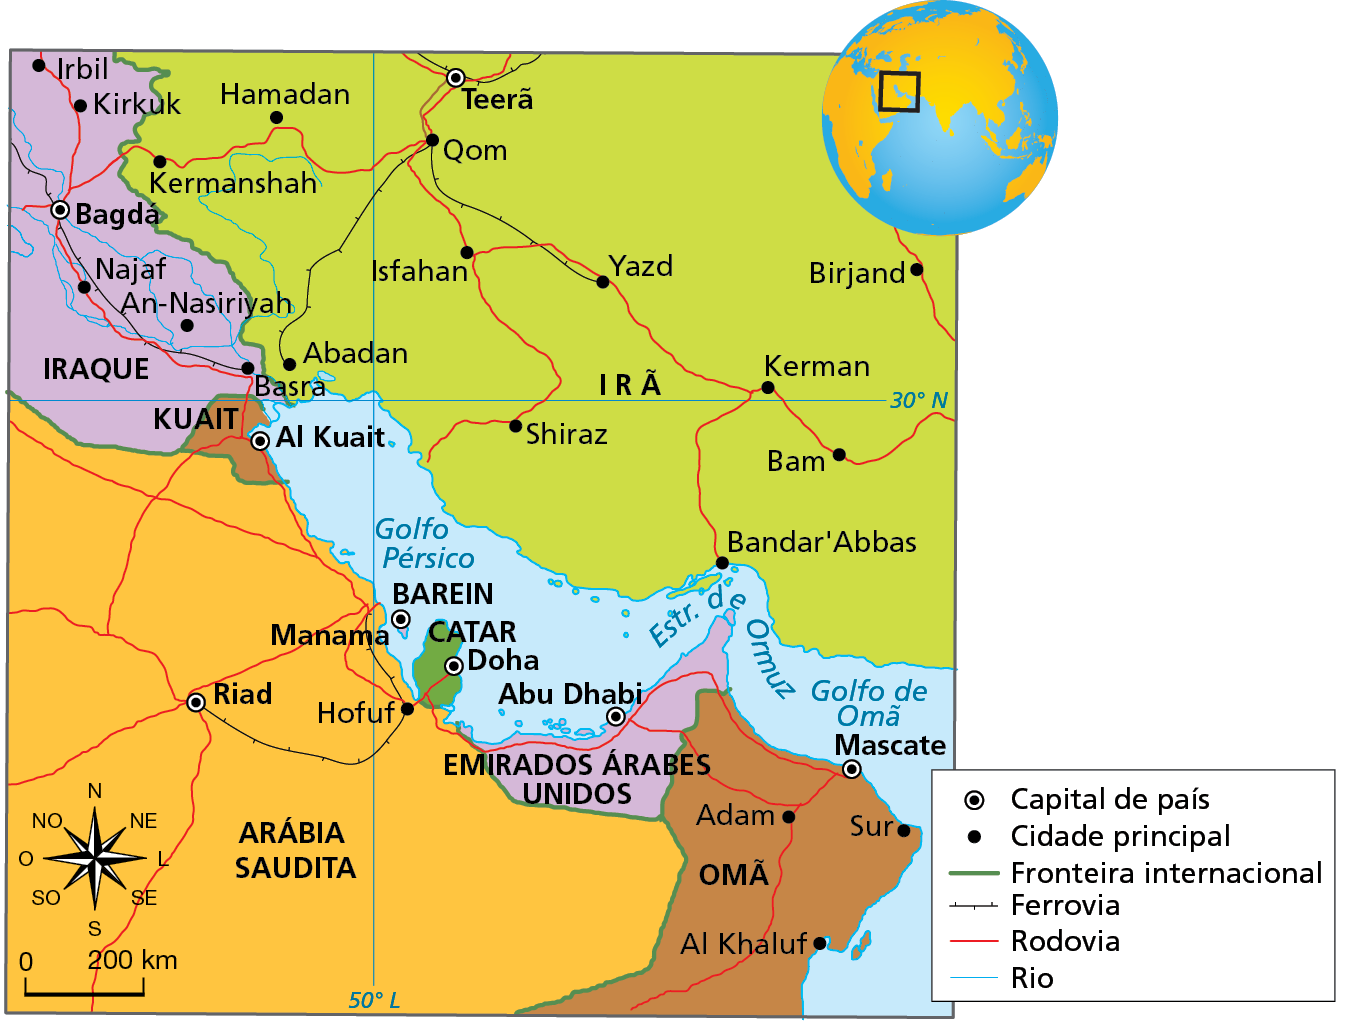 Mapa. O Golfo Pérsico, 2021. 
Mapa representando o Golfo Pérsico e os países que possuem territórios voltados para o golfo. 
Os países com litoral mais extenso no golfo são Irã, Arábia Saudita, Emirados Árabes Unidos e Omã. O Catar é uma península no Golfo Pérsico e por isso possui quase todo o território rodeado por água. Barein não pertence ao continente, sendo uma pequena ilha no Golfo Pérsico. Entre o Golfo Pérsico e o Golfo de Omã há o Estreito de Omuz, uma passagem estreita de água entre os Emirados Árabes Unidos e o Irã.
Irã. Capital: Teerã. Cidades principais representadas: Hamadan, Kermanchah, Abadan, Isfahan, Qom, Yazd, Shiraz, Bandar Abbas, Kerman, Bam e Birjand.
Iraque. Capital: Bagdá. Cidades principais representadas: Najaf, Irbil, Kirkuk, An-Nasiriyah, Basra.
Kuait. Capital: Al Kuait
Arábia Saudita. Capital: Riad. Cidade principal representada: Hofuf.
Omã. Capital: Mascate. Cidades principais representadas: Adam, Al Khaluf, Sur.  
Emirados Árabes Unidos. Capital: Abu Dhabi.
Catar. Capital: Doha. 
Barein. Capital: Manama.
Kuait. Capital: Al Kuait.
Fronteira internacional (linha verde): entre Irã e Iraque. Entre Iraque e Arábia Saudita. Entre Iraque e Kuait. Entre Kuai e Arábia Saudita. Entre Arábia Saudita e Emirados Árabes Unidos. Entre Omã e Emirados Árabes Unidos e Arábia Saudita. Entre Arábia Saudita e Catar.  
Ferrovia (linha preta tracejada): no Iraque passando pelas cidades de Basra, Najaf e Bagdá. Na Arábia Saudita, de Riad a Hofuf. No Irã ligando as cidades Abadan, Qom e Yazd.  
Rodovia (linha vermelha): presente na Arábia Saudita, Irã, Emirados Árabes Unidos, Omã, Iraque, Catar e Kuait.  
Rio (linha azul): diversos rios no Iraque e um rio no Irã. 
Abaixo, rosa dos ventos e escala de 0 a 200 quilômetros.